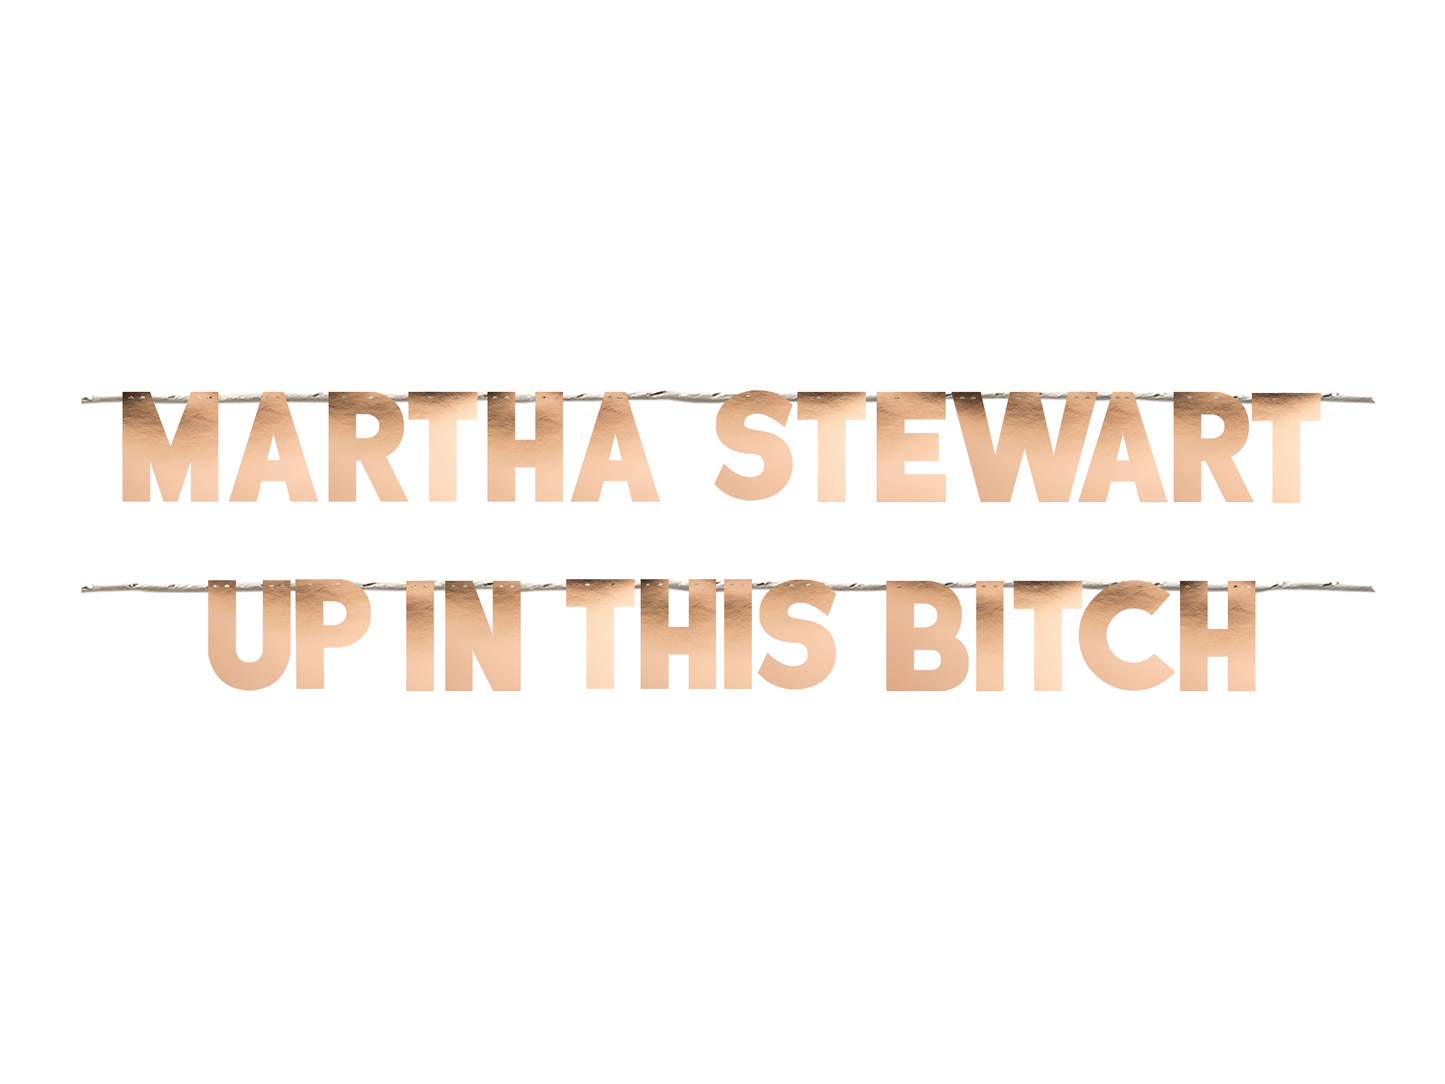 MARTHA STEWART UP IN THIS BITCH